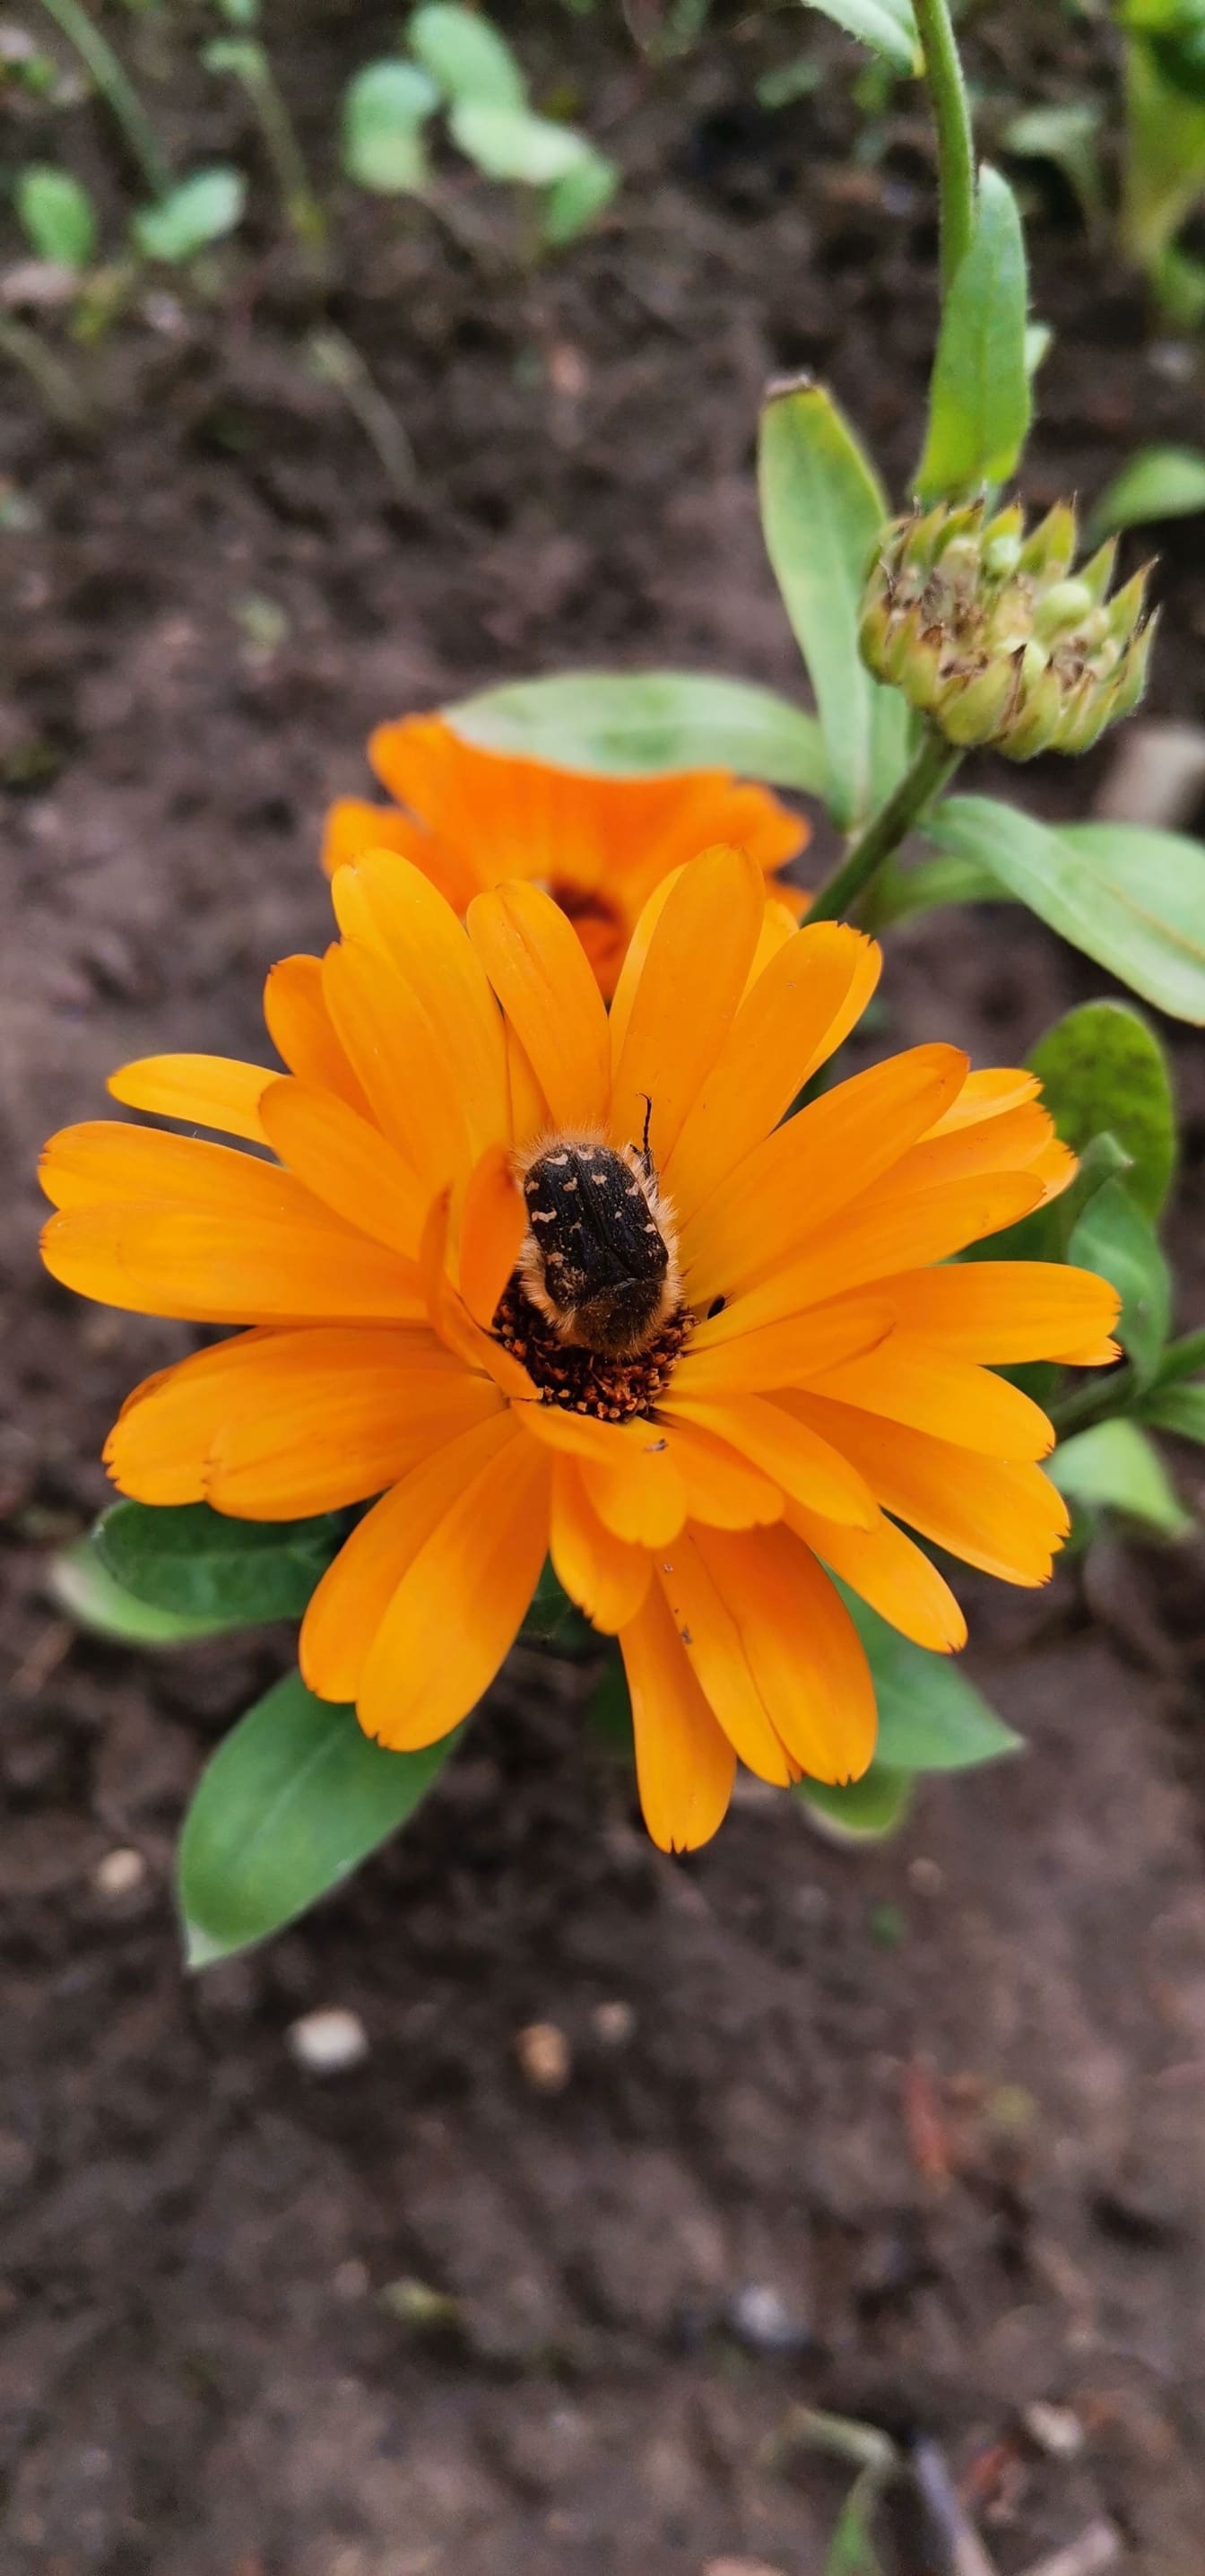 Șorțul mediteranean reperat (Oxythyrea funesta) gândacul pe floare galbenă portocalie